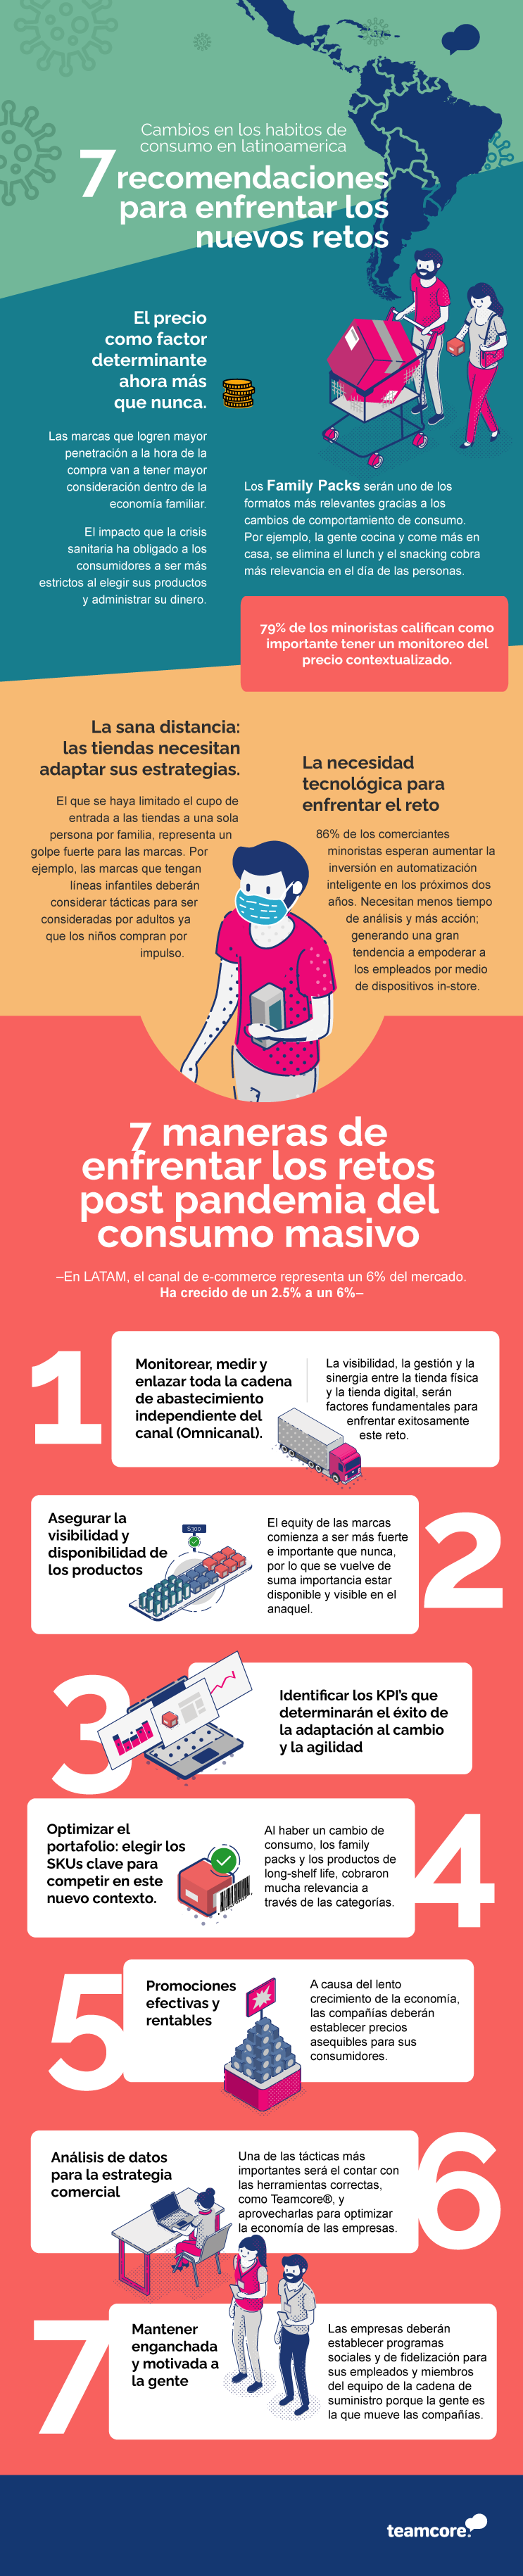 infografía 7 maneras de enfrentar retos post pandemia del consumo masivo teamcore®